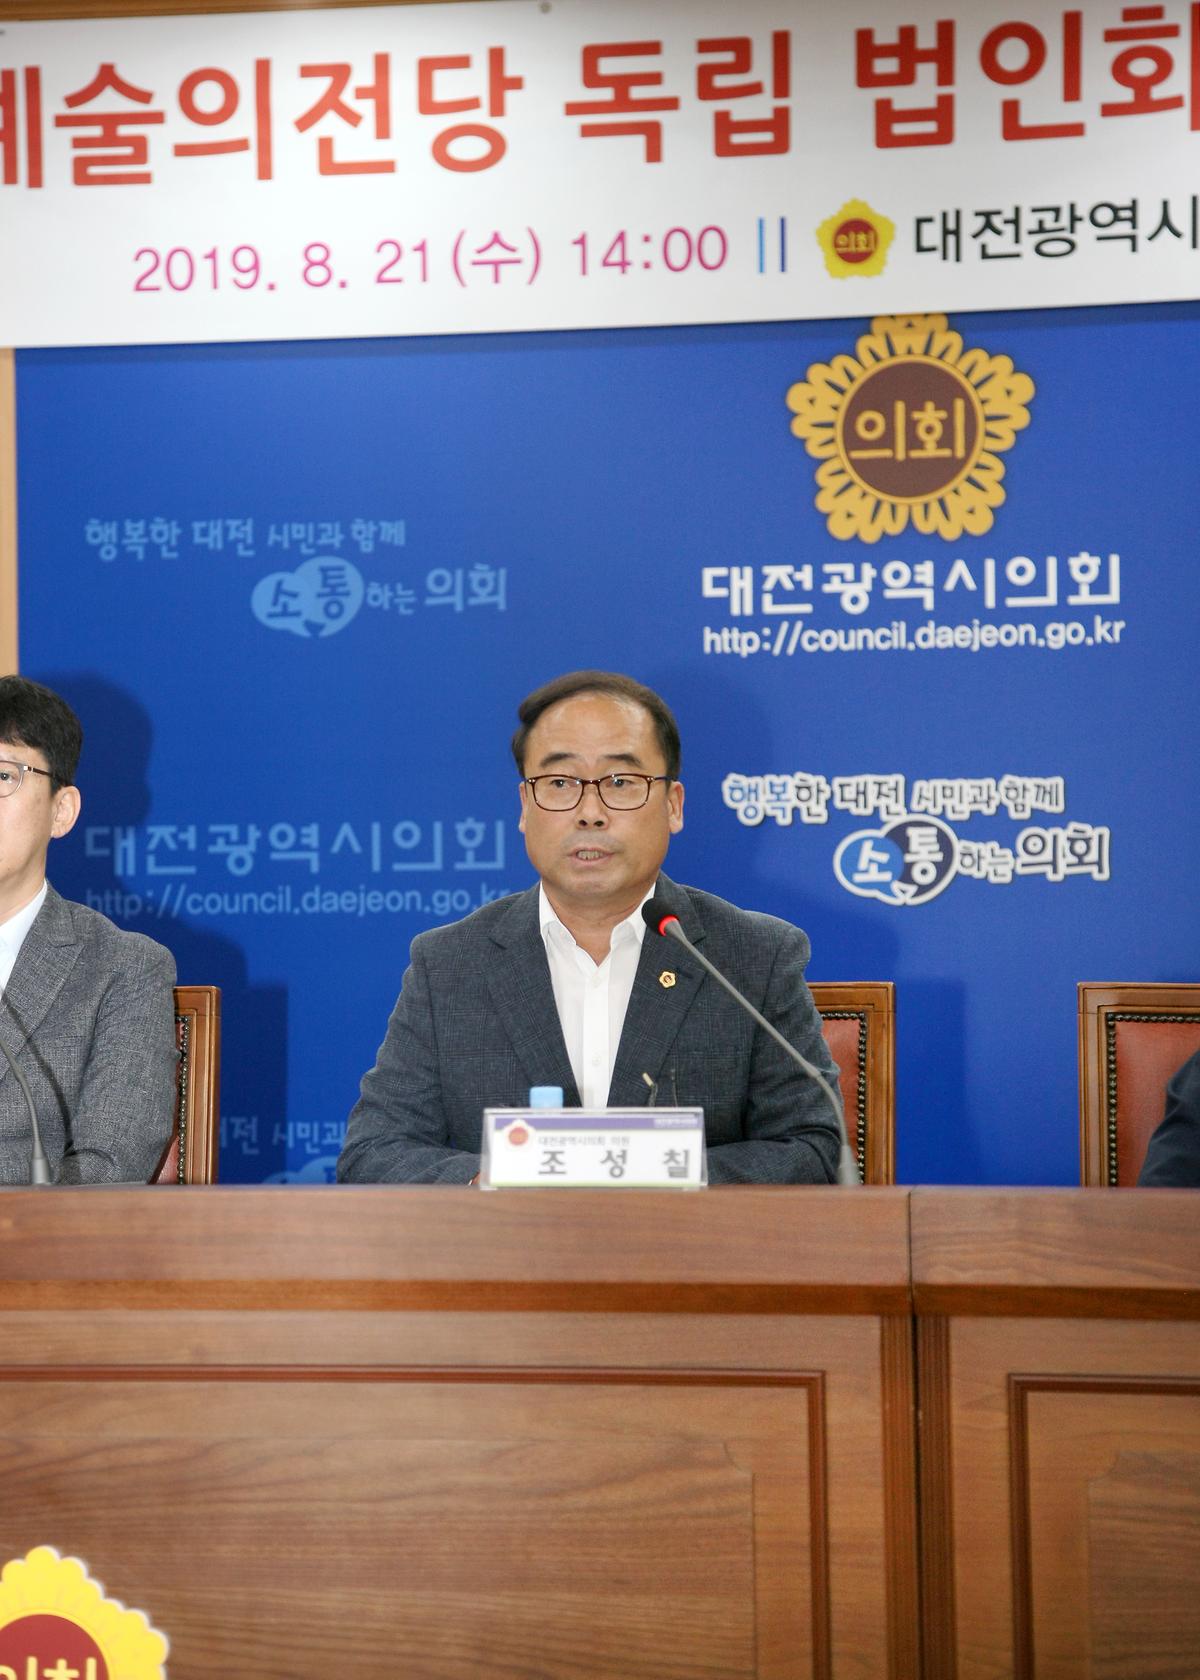 조성칠 의원, '대전예술의전당 독립 법인화 방안 정책토론회' 개최 [ 2019-08-21 ]